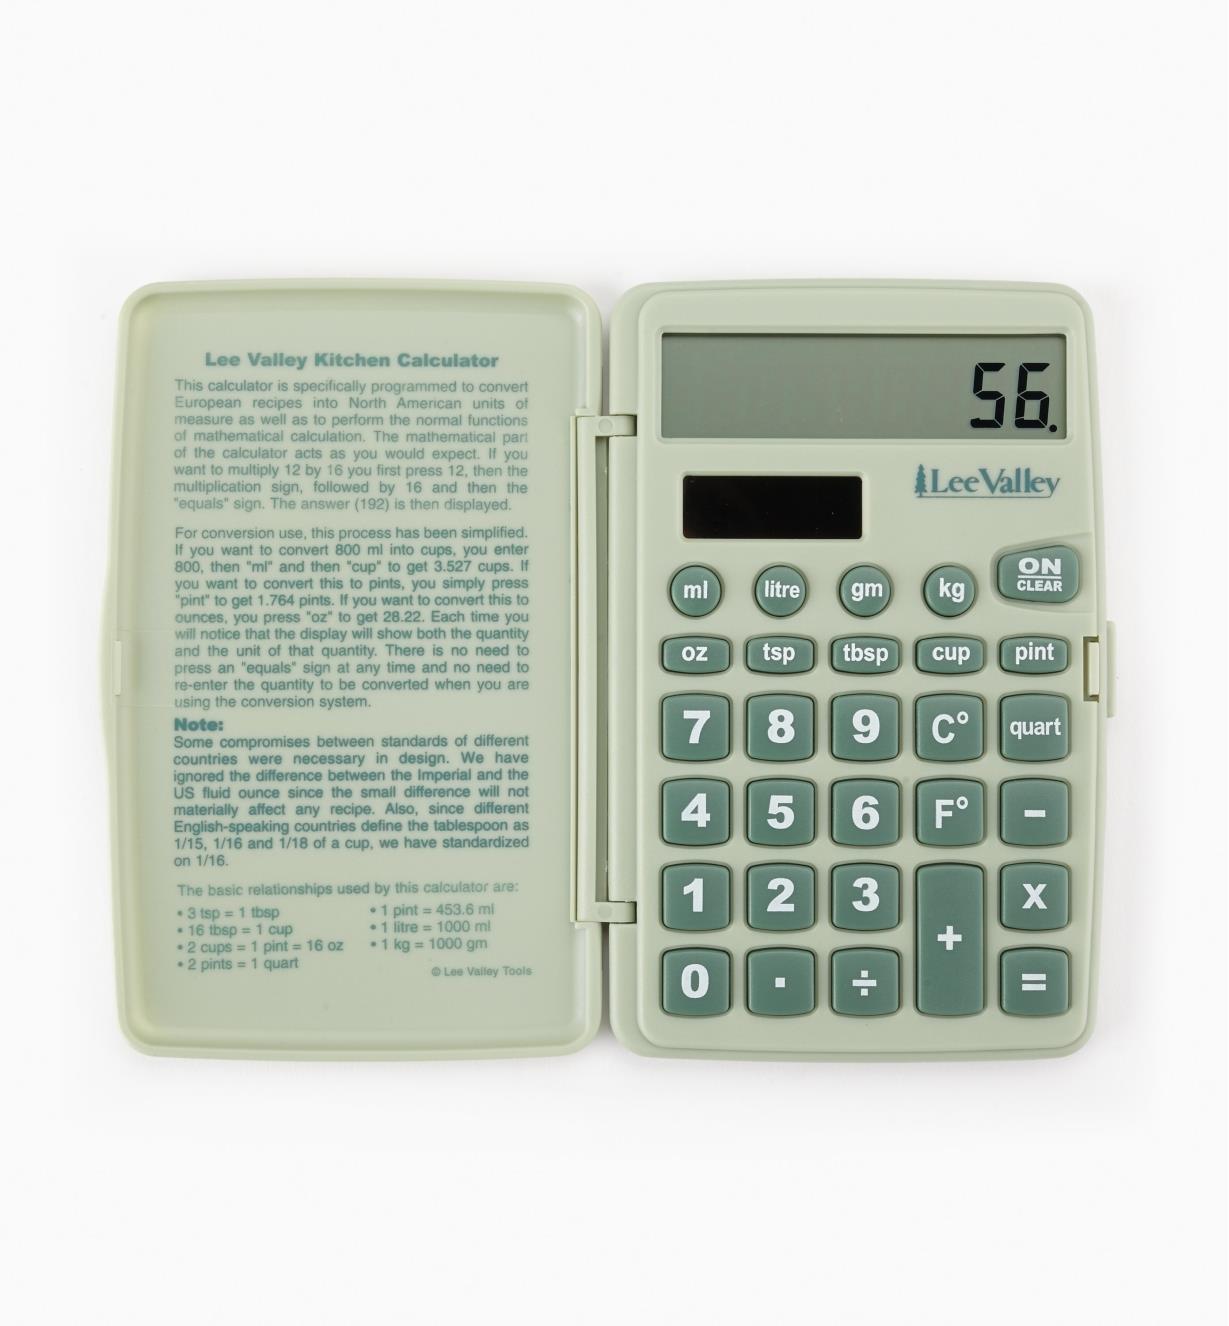 EV160 - Lee Valley Kitchen Calculator